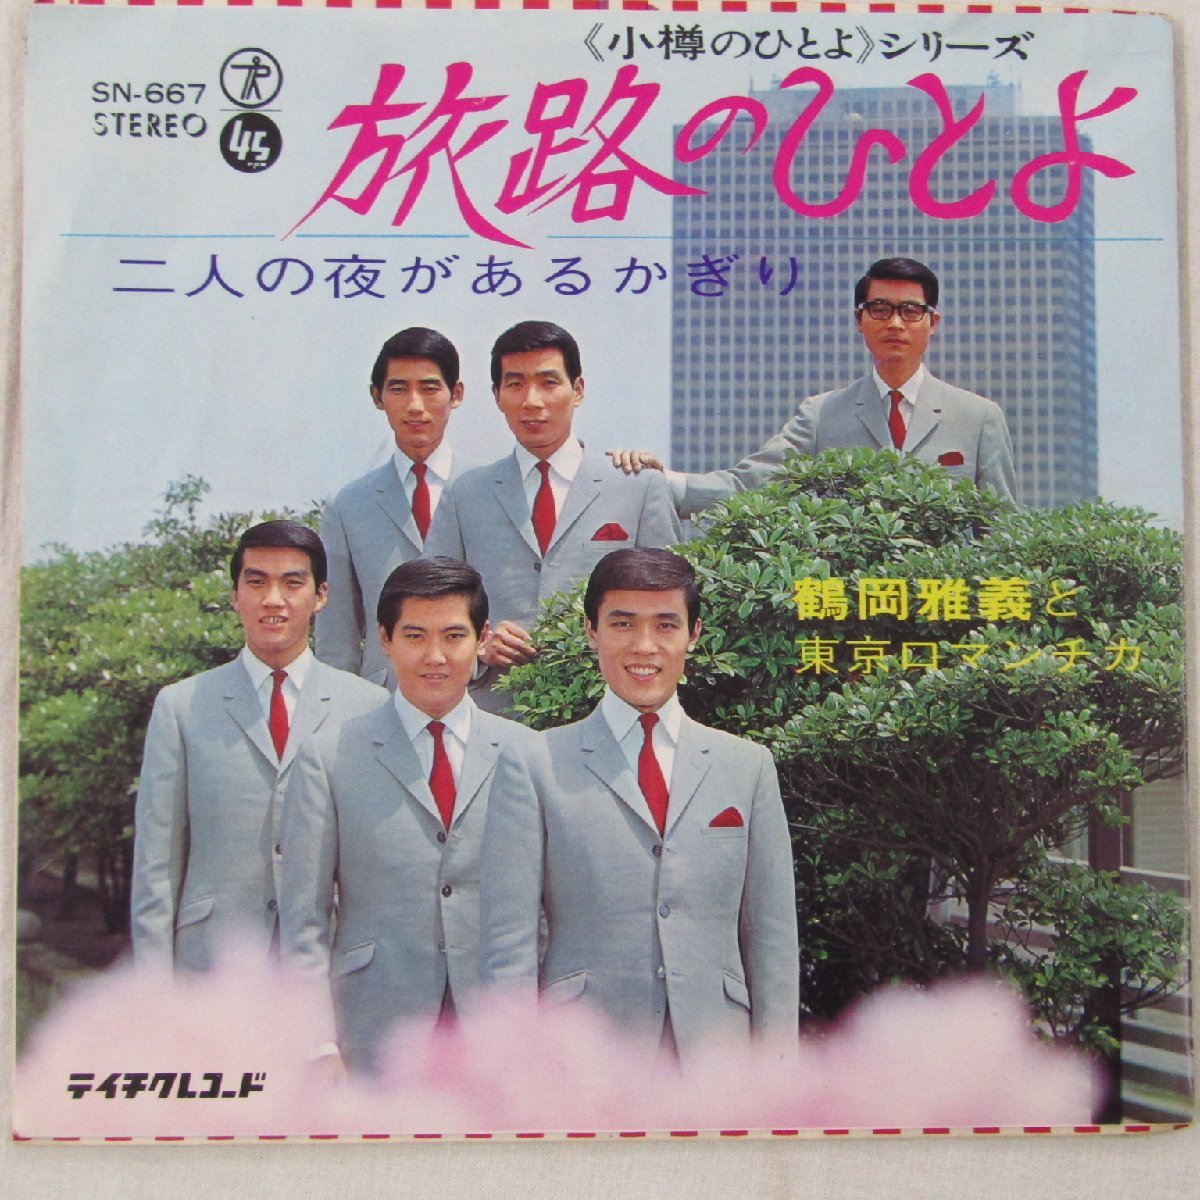 未使用 古い 7インチ レコード　旅路のひとよ/二人の夜があるかぎり　鶴岡雅義と東京ロマンチカ テイチク株式会社 SN-667 Re736_画像1